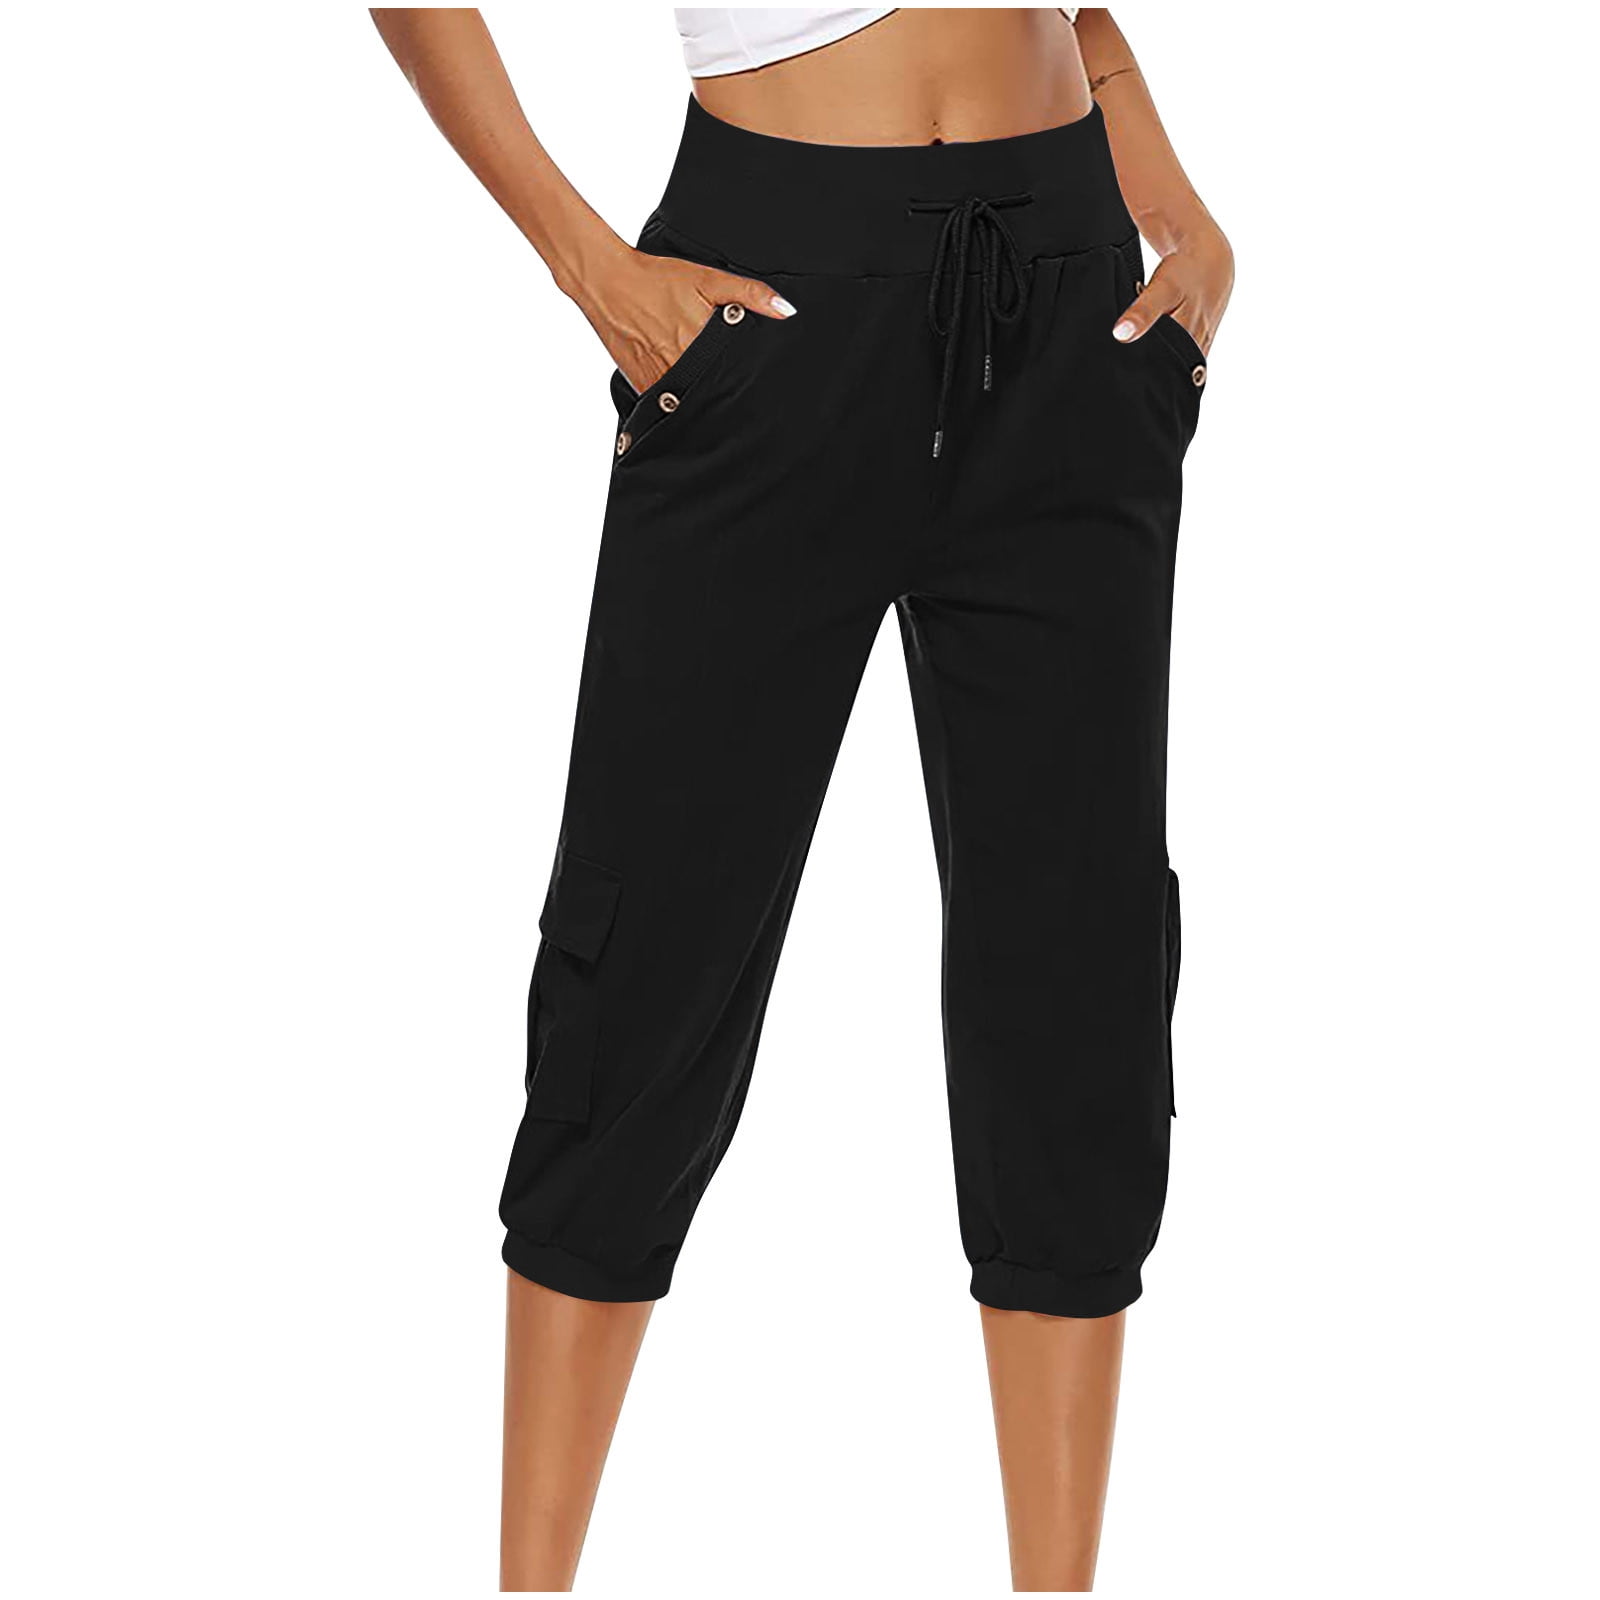 Capri Pants for Women Cotton Linen Plus Size Cargo Pants Capris Elastic  High Waisted 3/4 Slacks with Multi Pockets (XX-Large, Black)